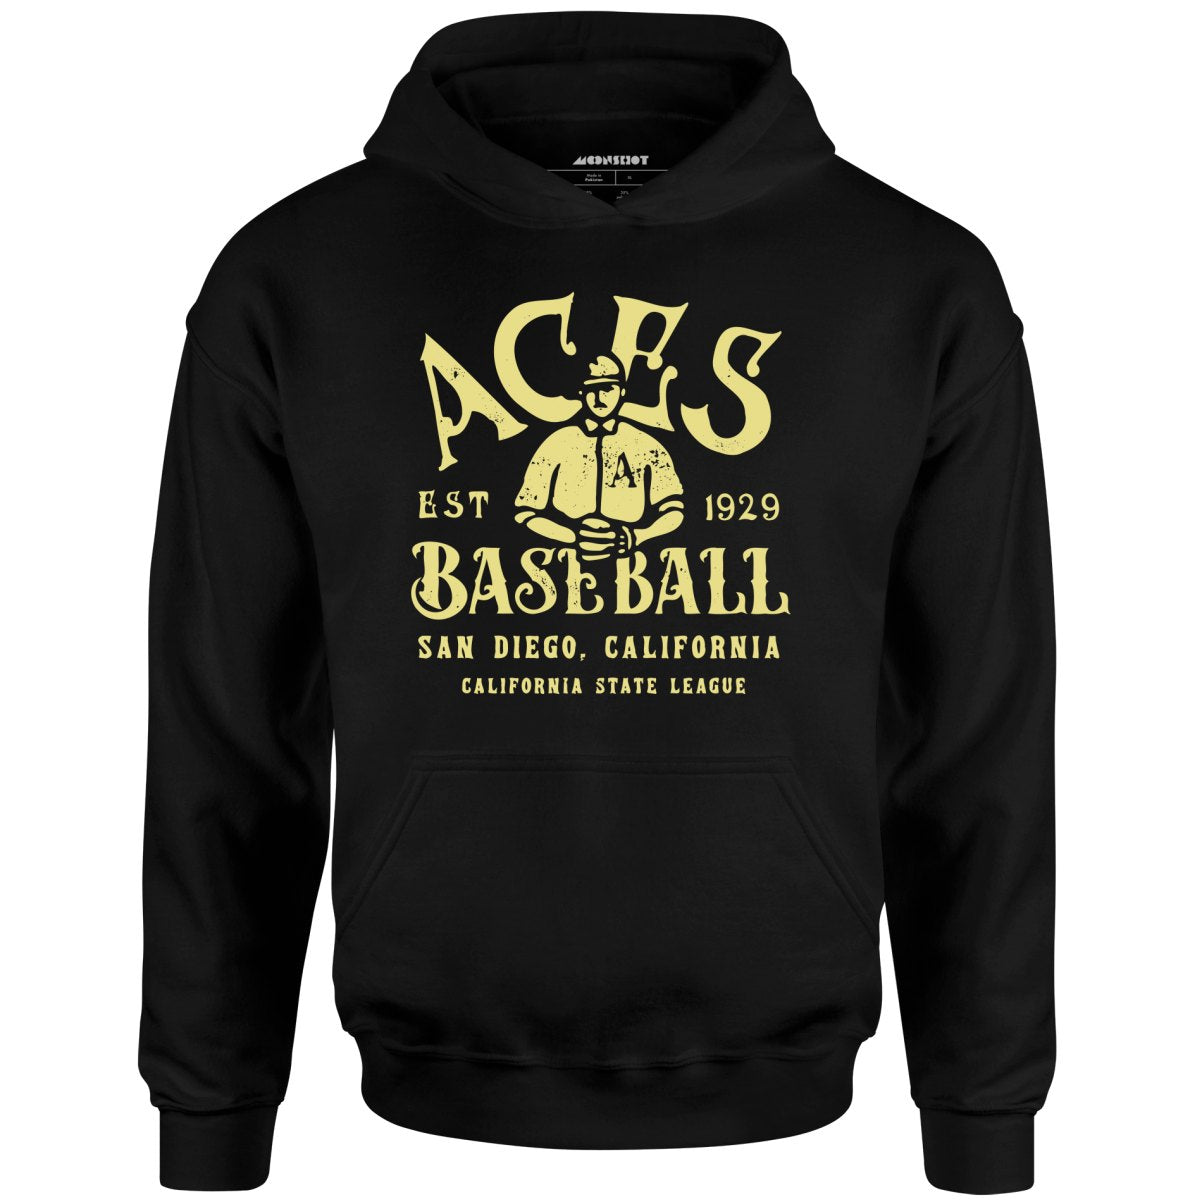 San Diego Aces - California - Vintage Defunct Baseball Teams - Unisex Hoodie